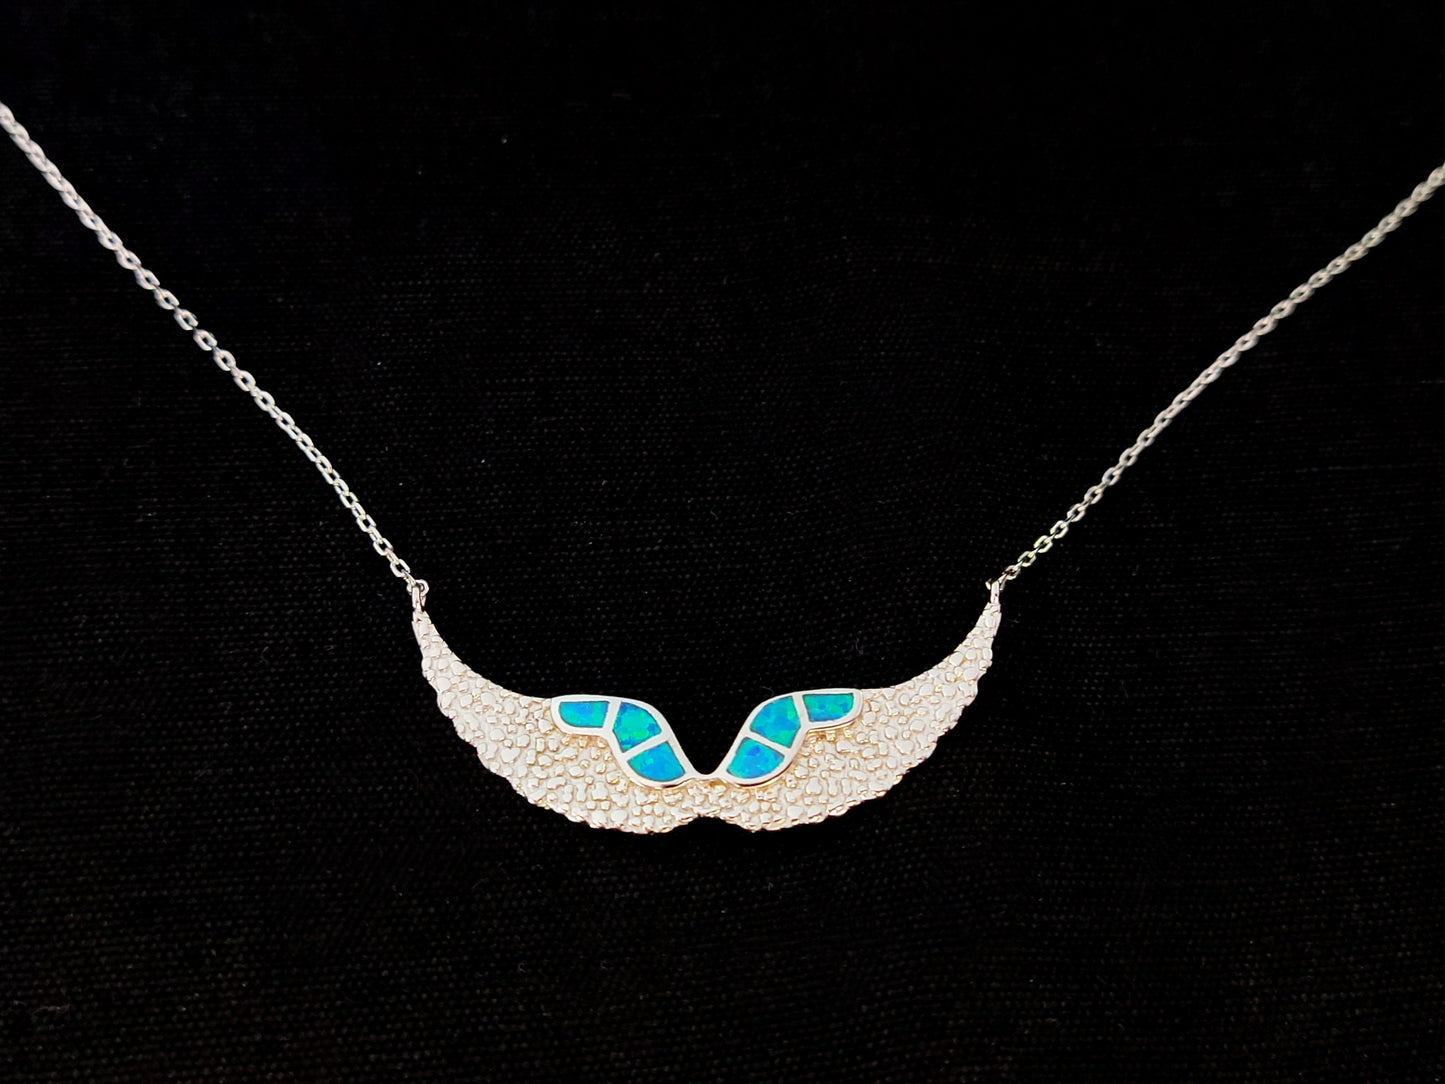 Sterling Silber 925 Fire Rainbow Blue Opal Angel Wings Chain Pendant Necklace, Griechischer Opal Kette, Bijoux Grecque, Greek Jewelry